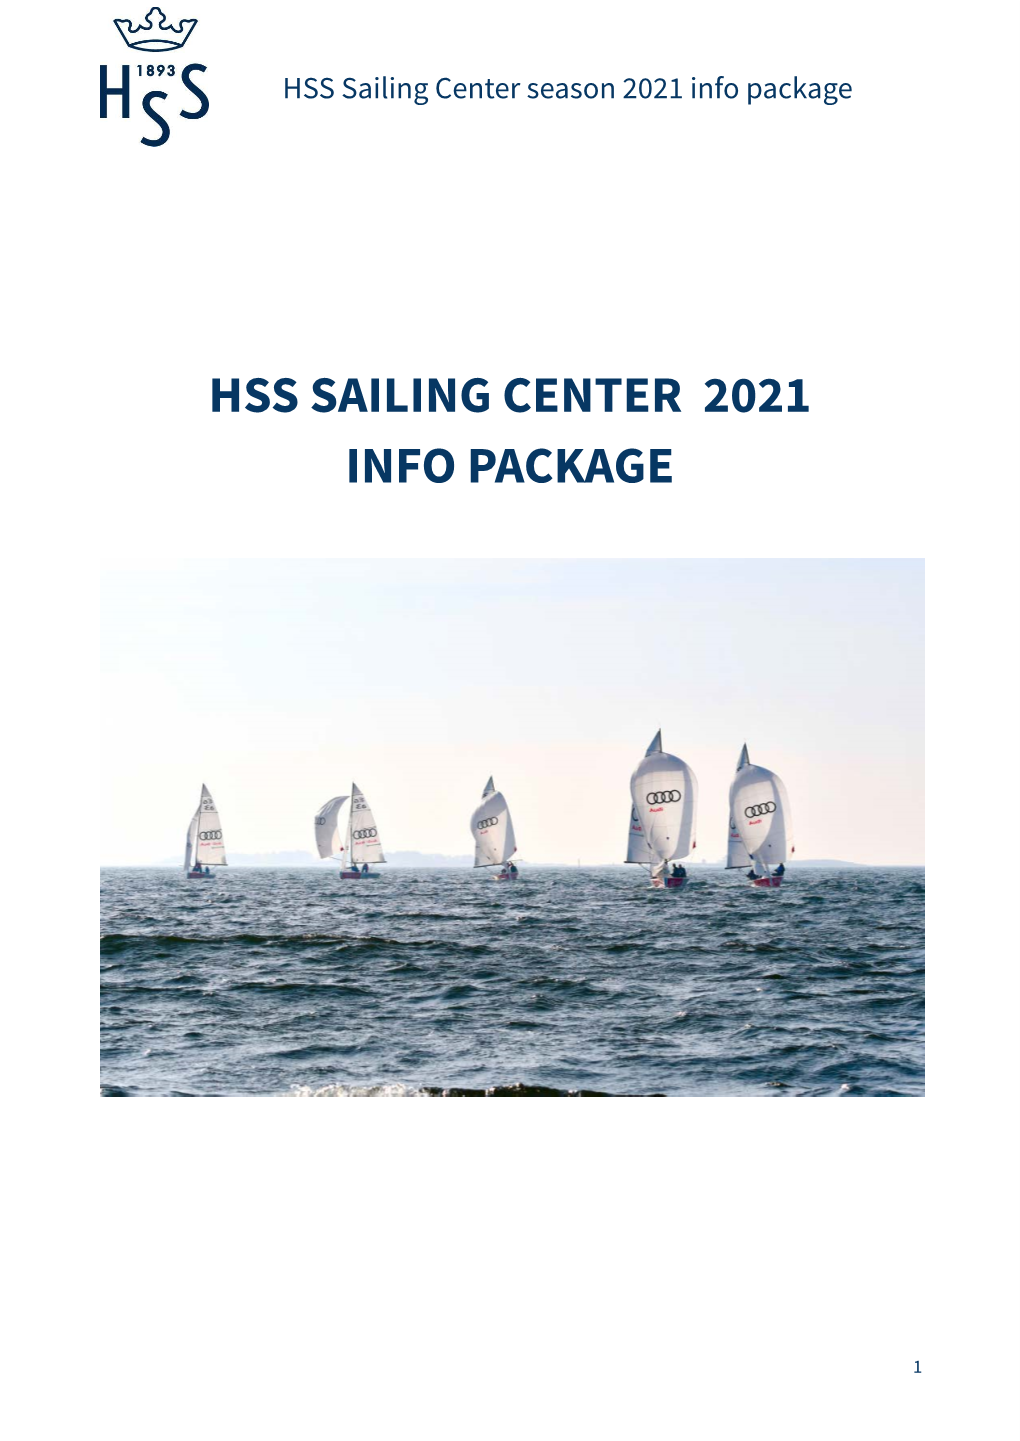 HSS Sailing Center Info Package 2021